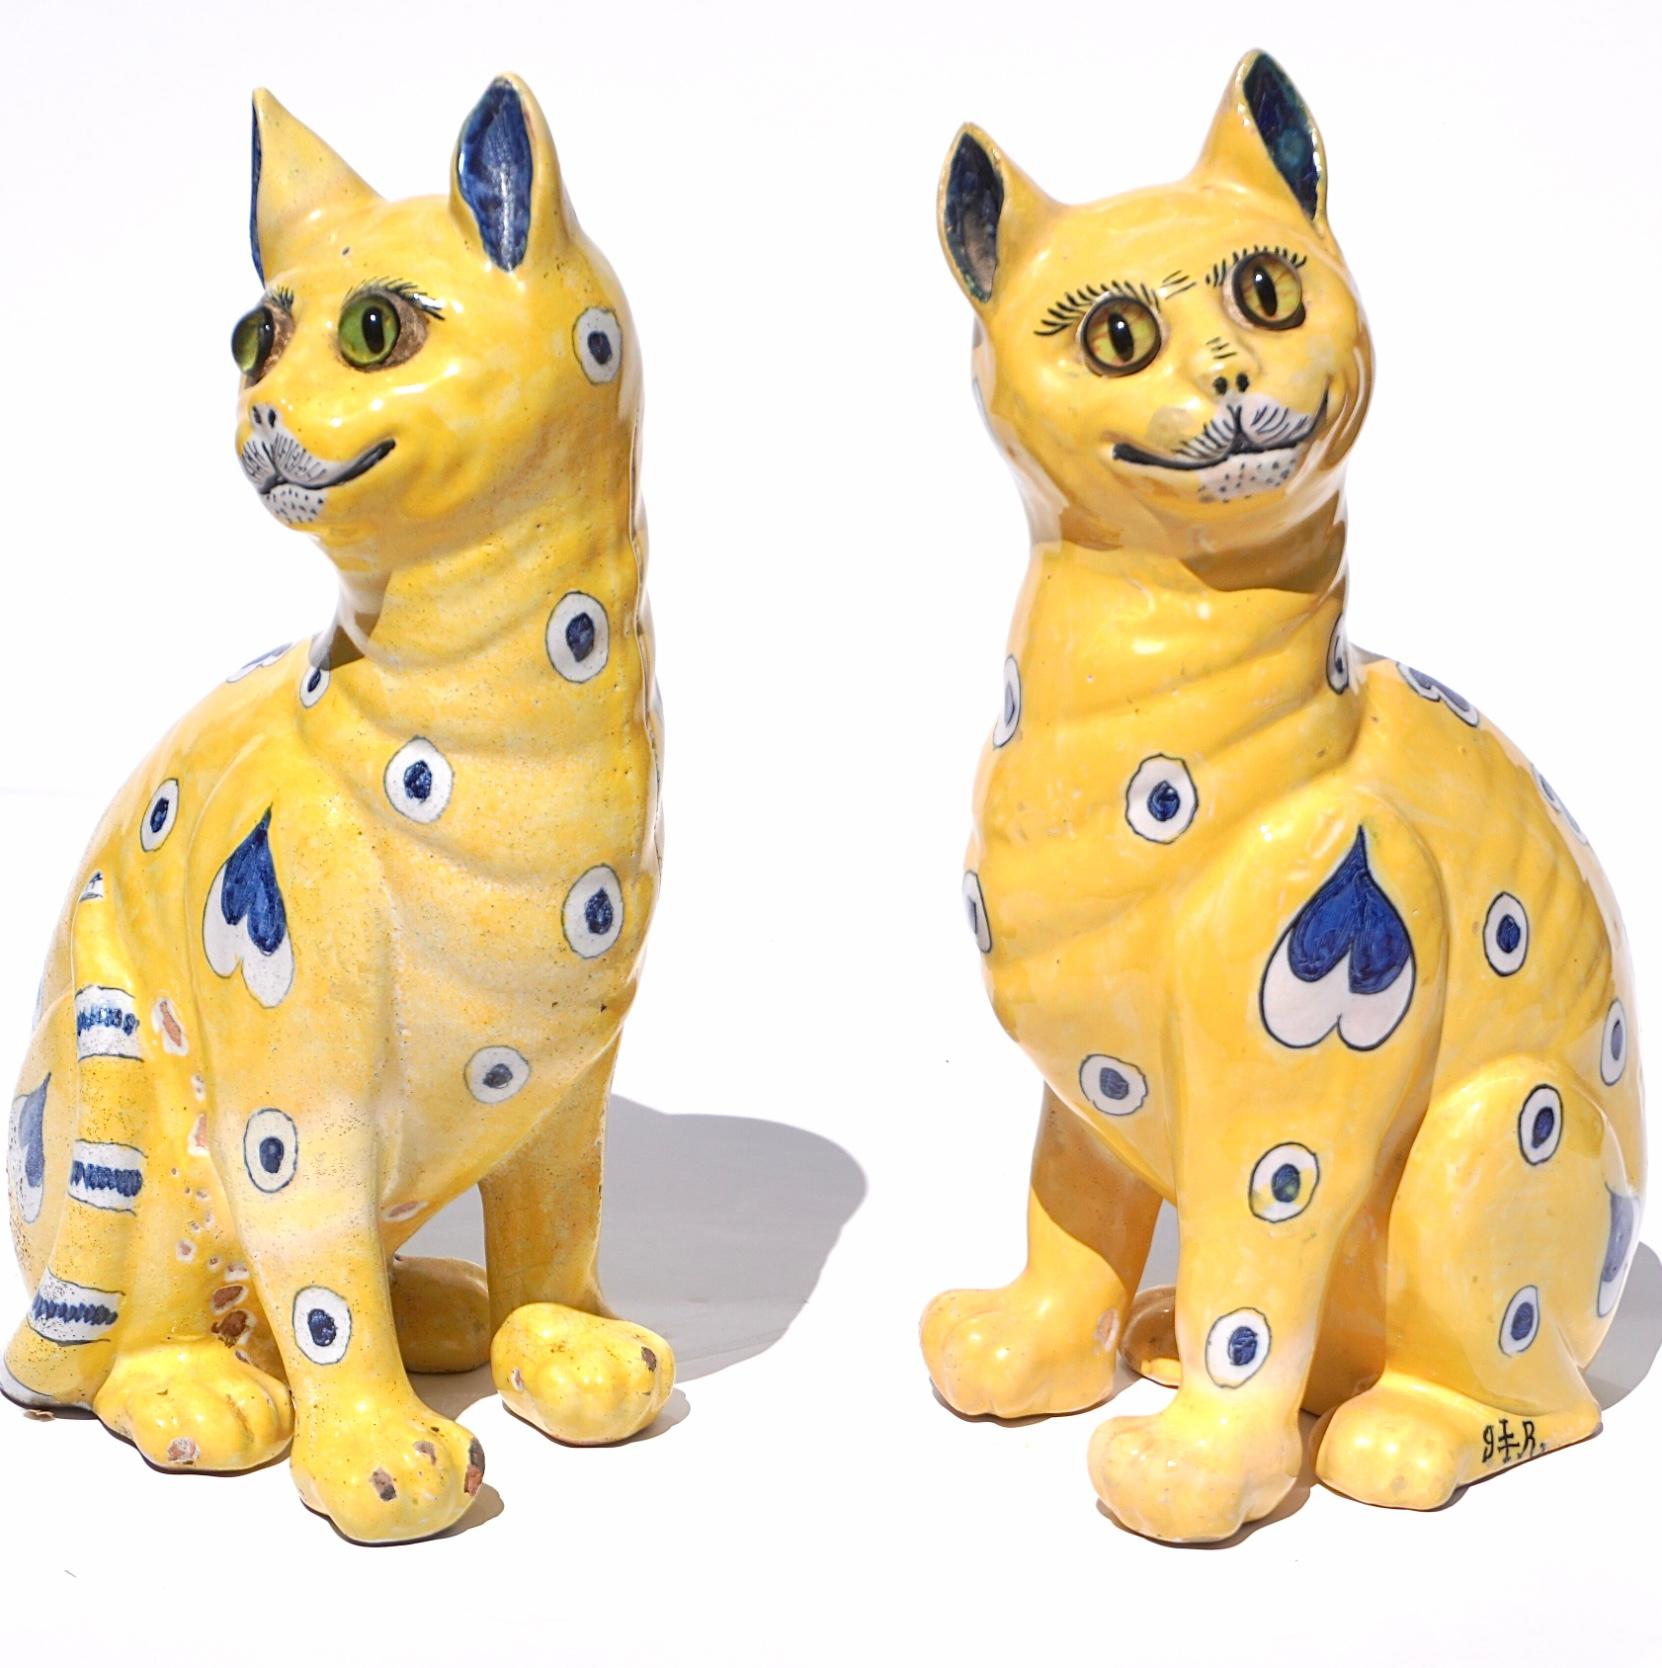 Ein Paar von Emile Galle signiert komisch skurrilen Katzen mit Glasaugen in Nancy Frankreich gemacht
Um 1890. Nancy Frankreich
Signiert auf den Beinen mit der Marke Gallé Reinemer.

Das Paar aus Fayence mit gelbem Grund und glasierten Katzen mit